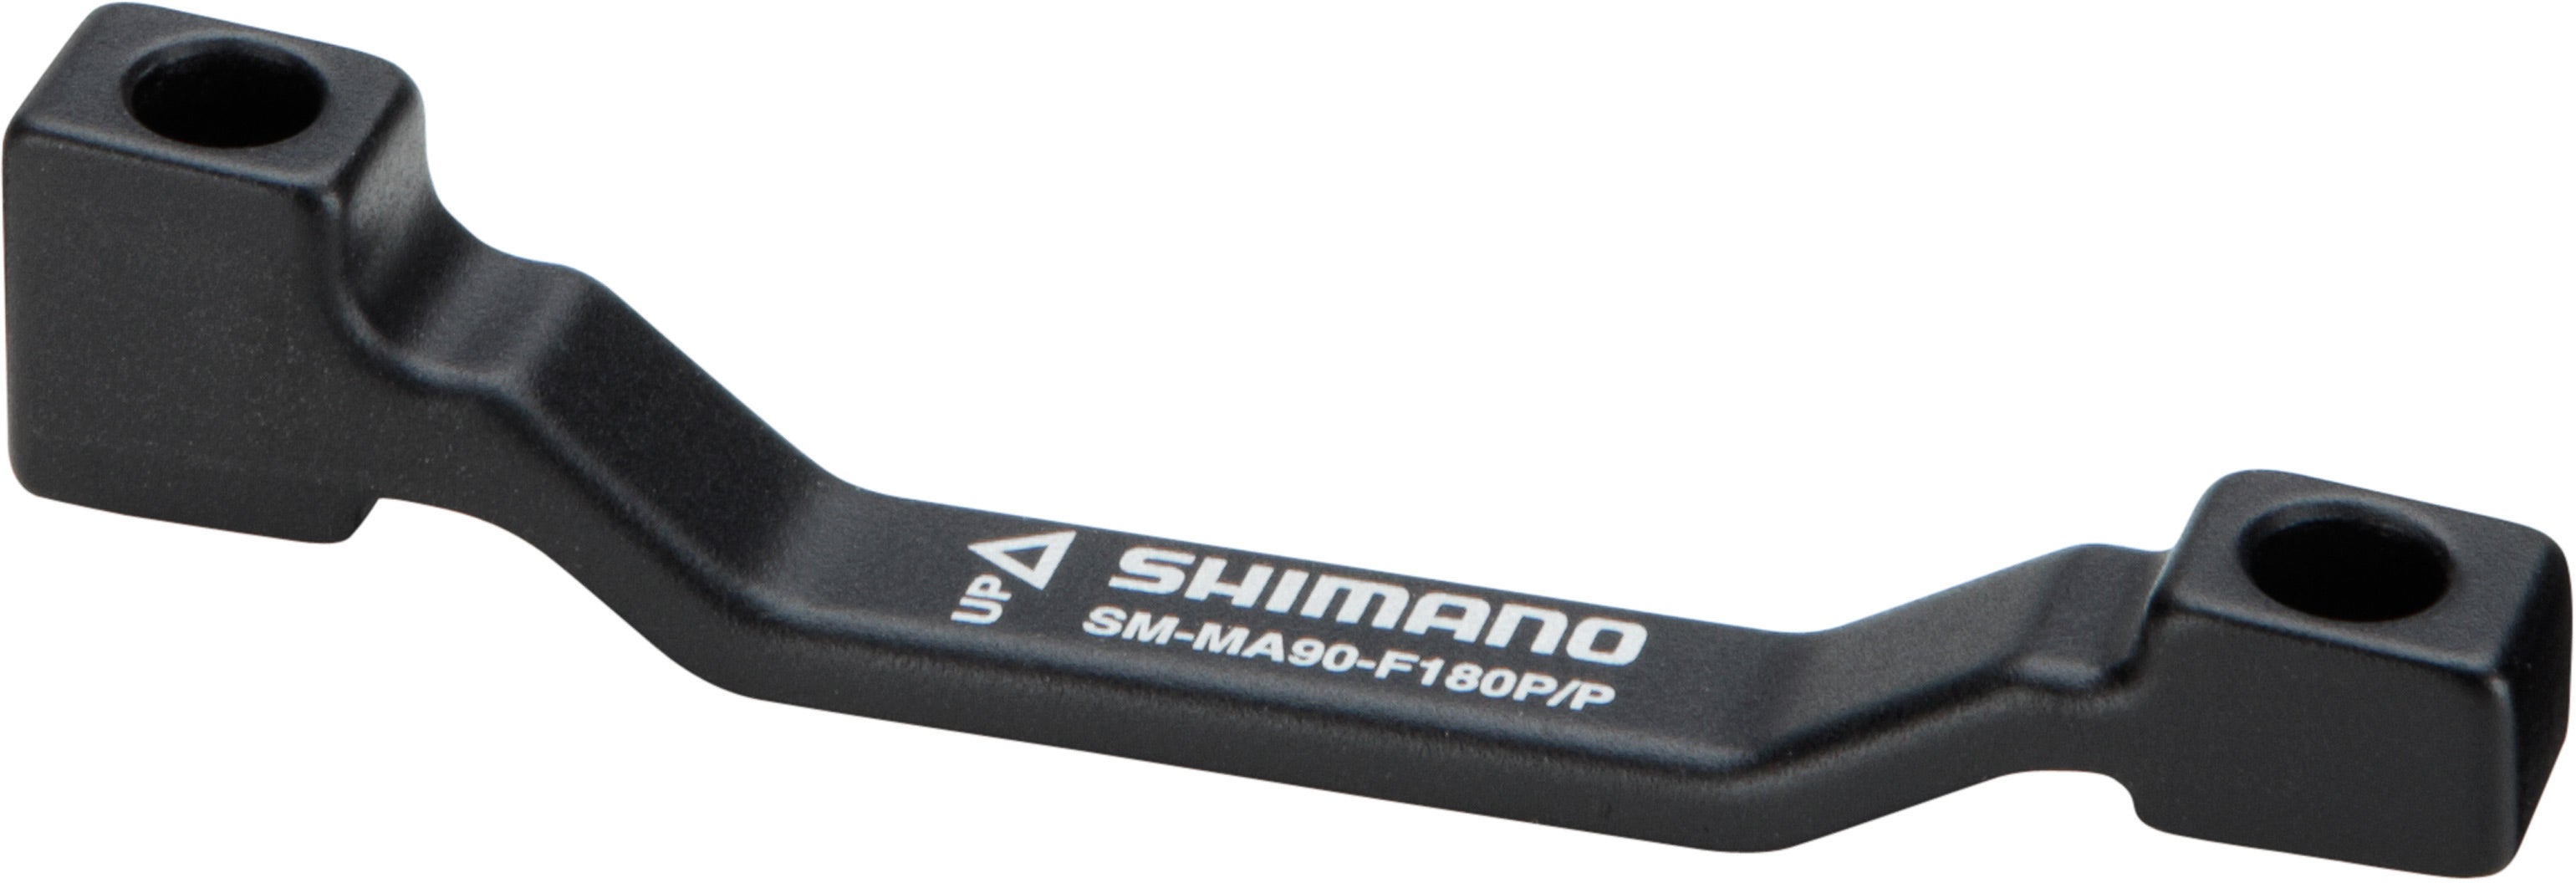 Shimano XTR Disc Brake Mount Adapter